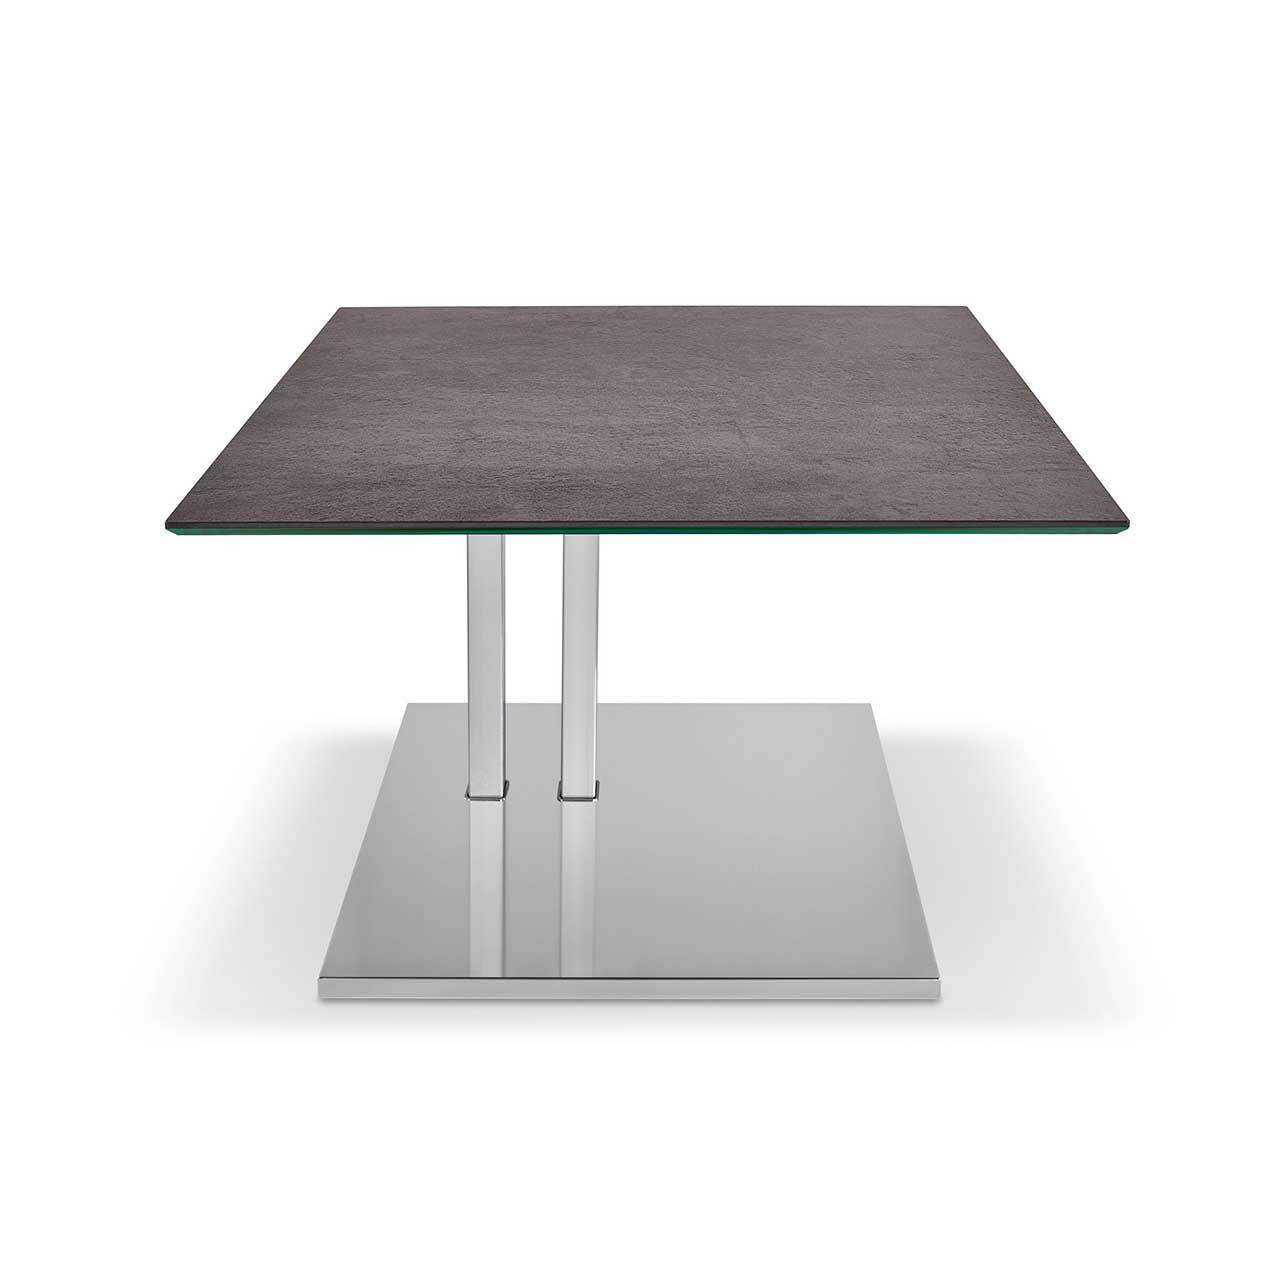 Ronald Schmitt – Beistelltisch Doppio K 525 | Tischplatte Keramik Zement grau, Sockel Edelstahl geschliffen